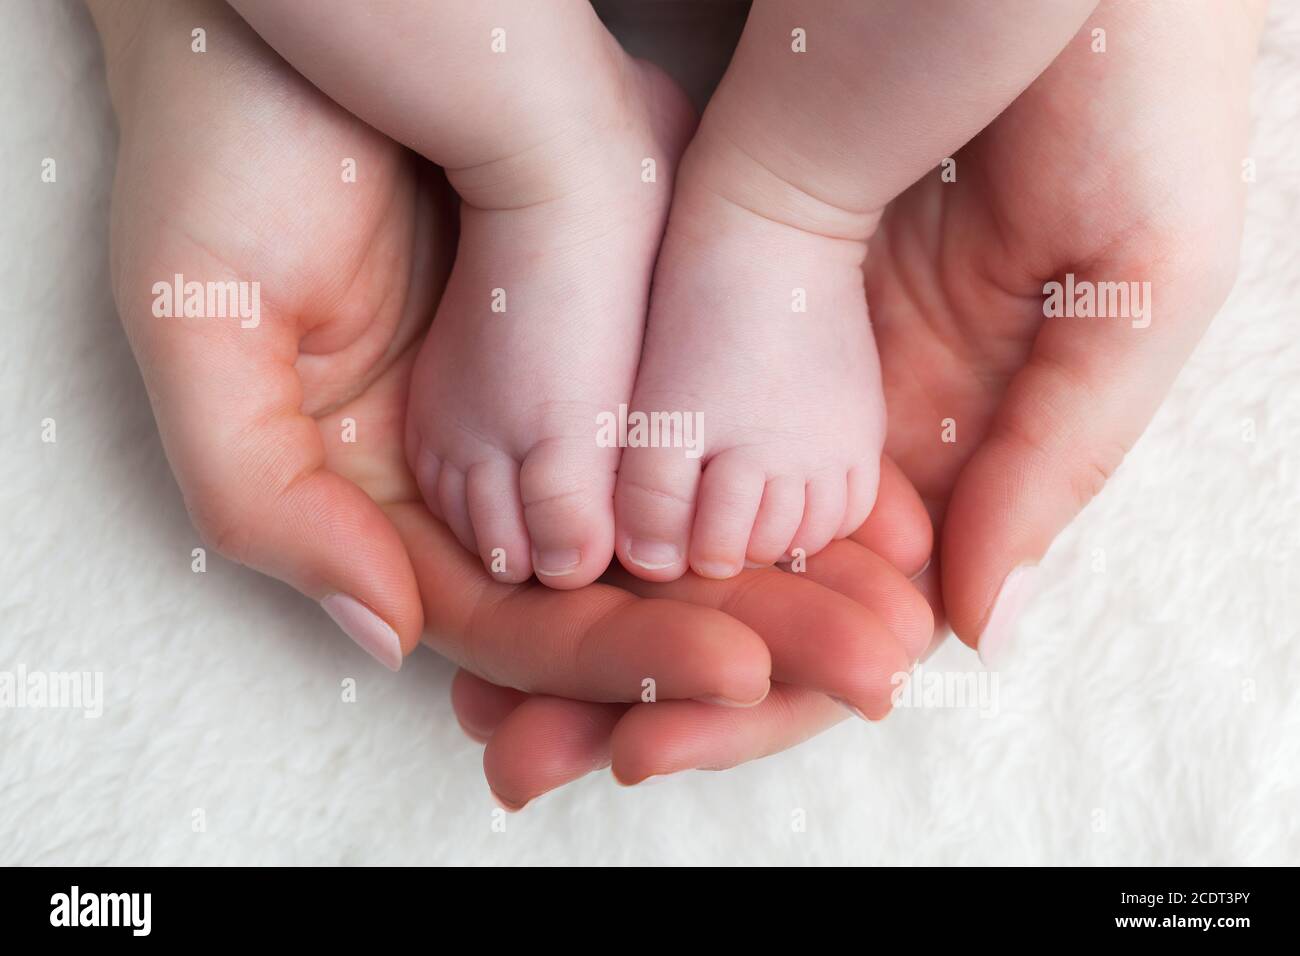 Les pieds du nouveau-né dans les mains de la mère#39;s. Garde d'enfants, se sentir en sécurité, protéger. Banque D'Images